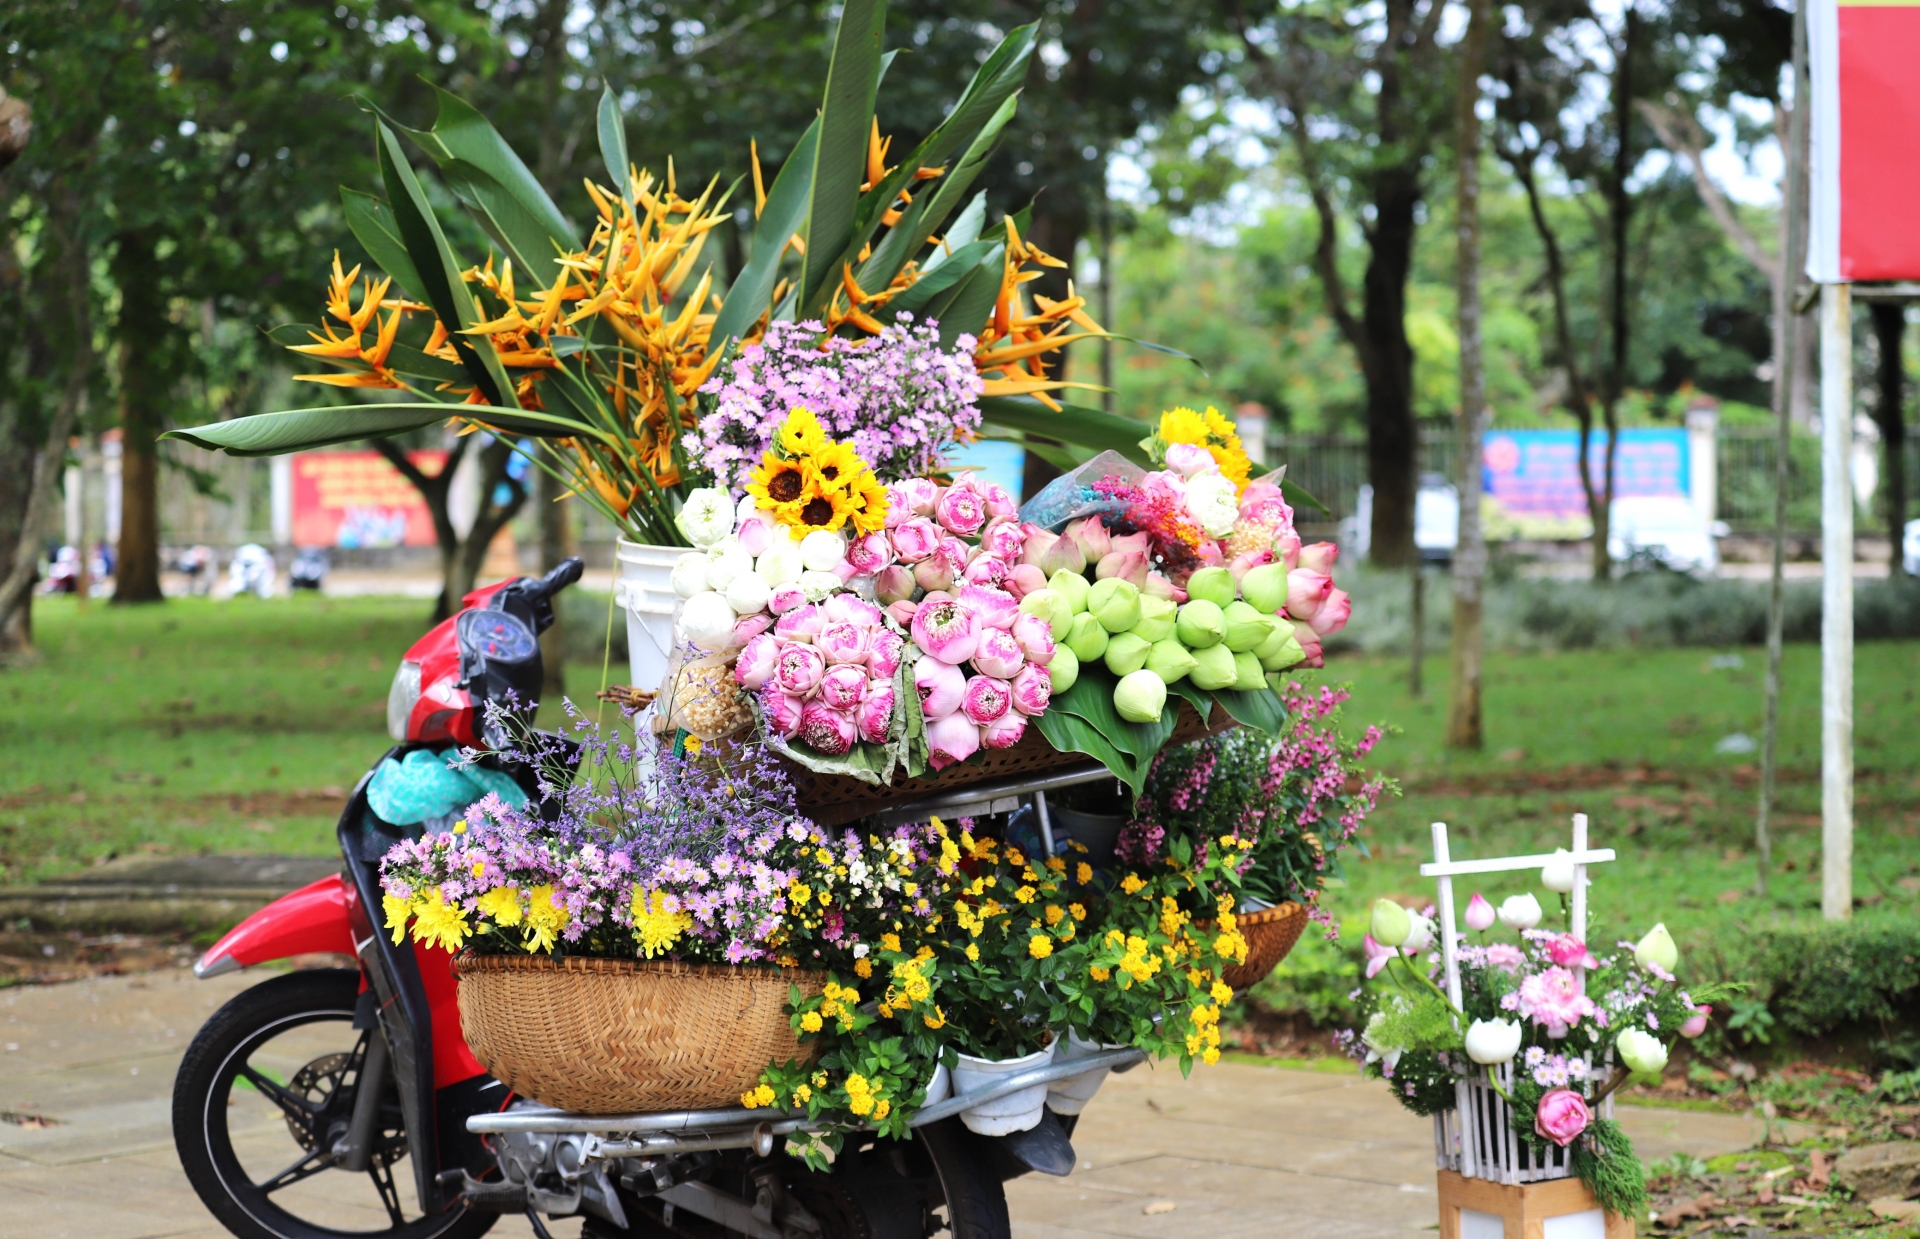 Hình ảnh chiếc xe chở đầy hoa trên đường phố là đặc sản của Hà Nội khi vào thu, giờ đây đang xuất hiện tại Công viên 28 tháng 3 TP Bảo Lộc